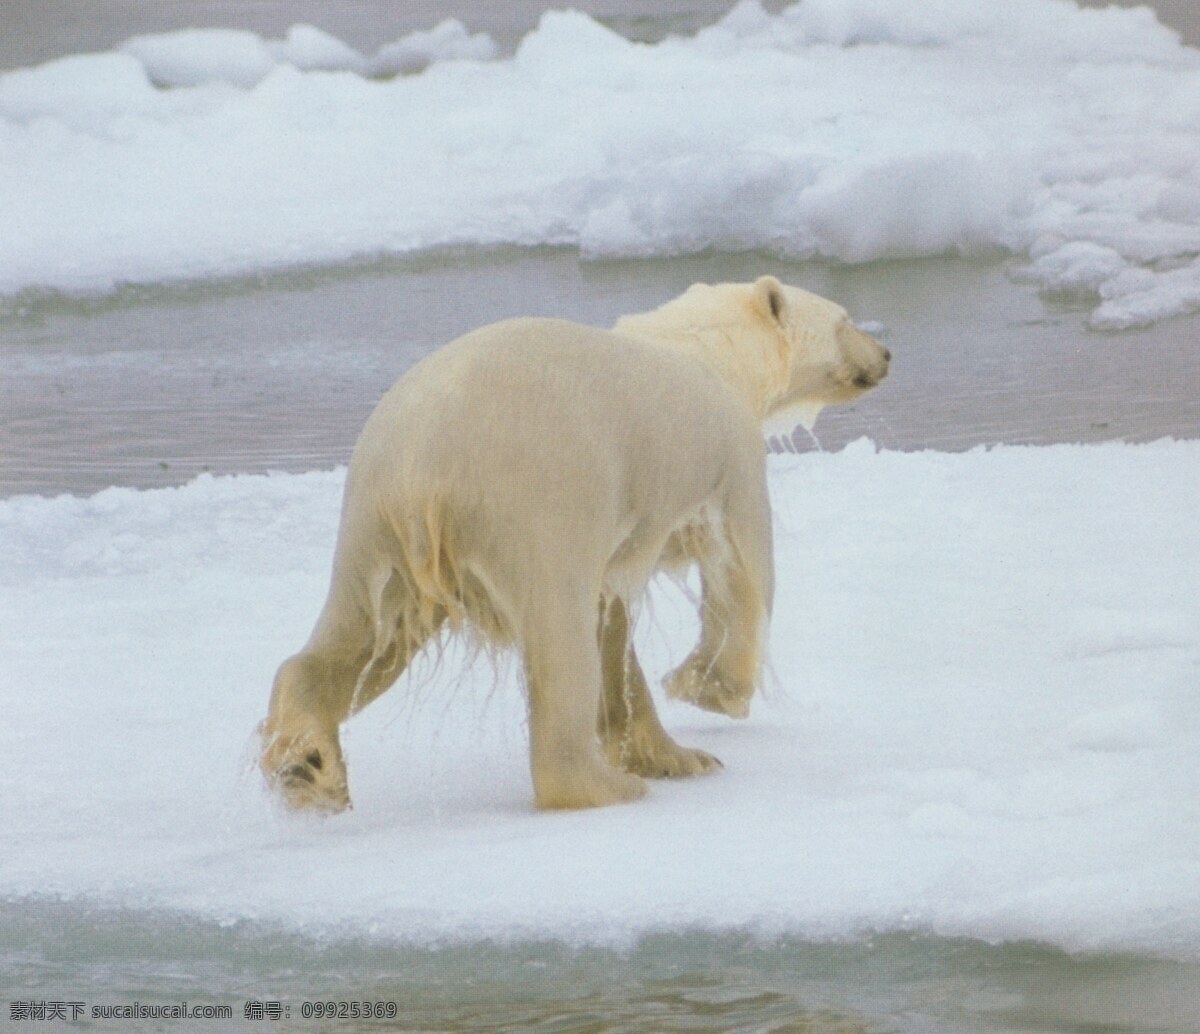 极地免费下载 保护 北极熊 冰雪 动物 广告 大 辞典 可爱 极地 海狮 狗熊 生物世界